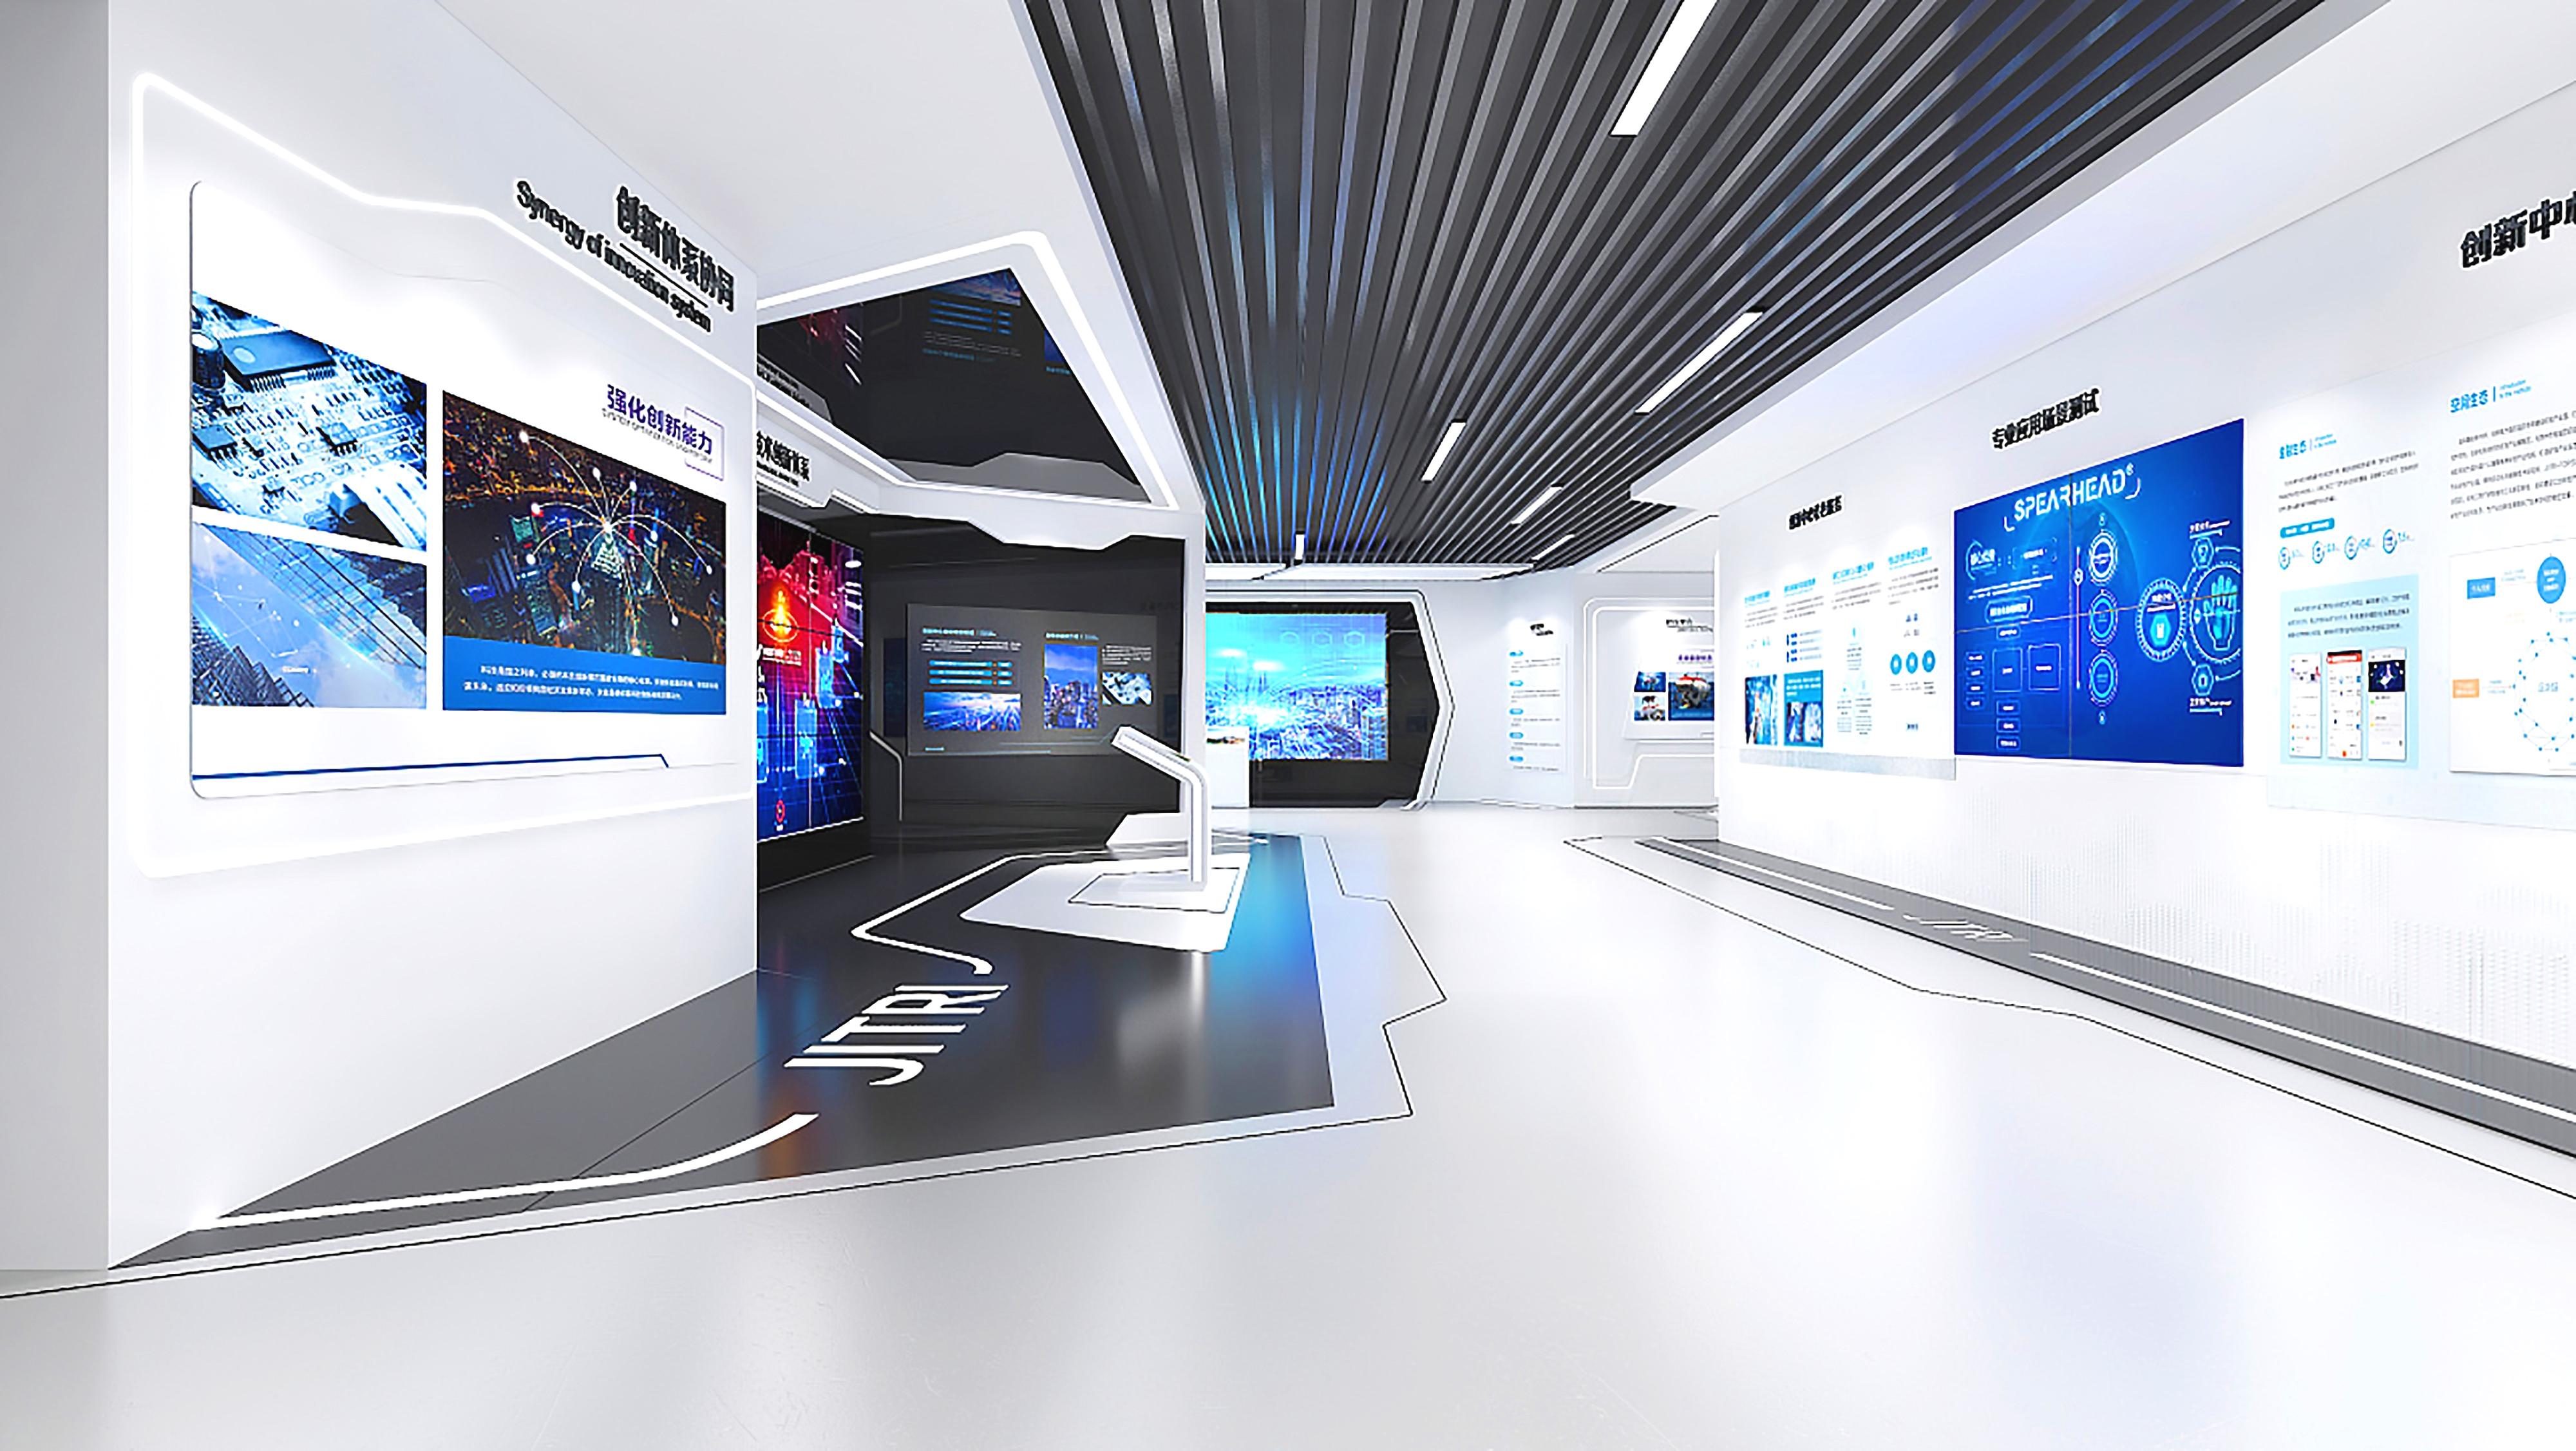 这是一间现代感的展览室，墙上有多个显示屏展示技术信息，室内设计简洁，色调以白色和蓝色为主。